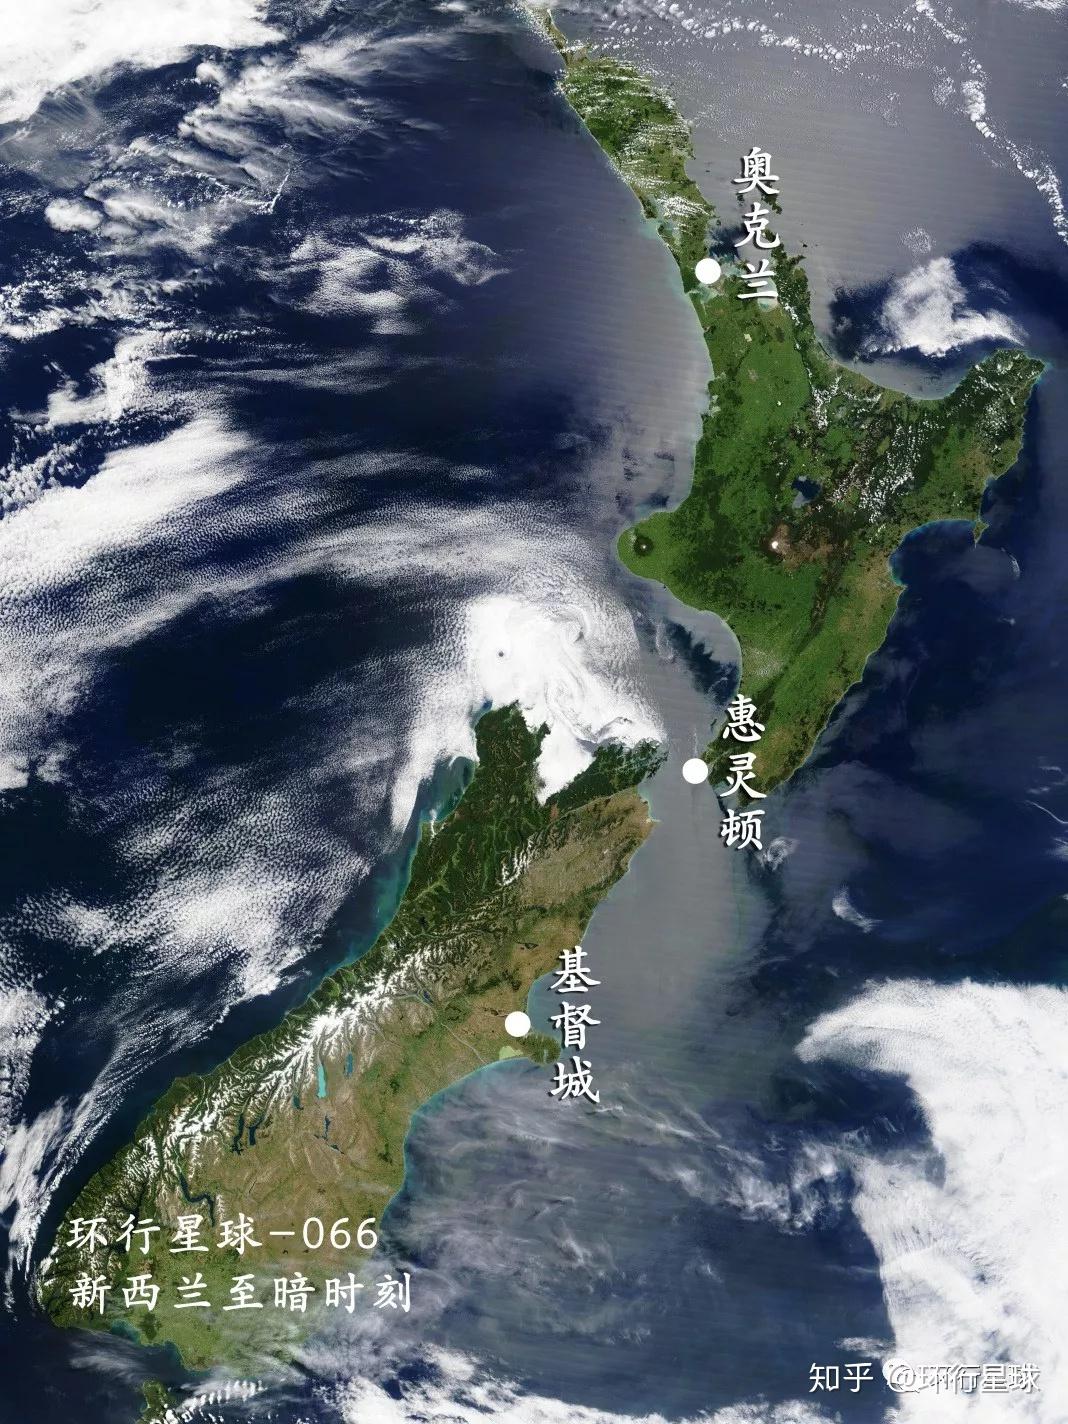 新西兰怀特岛火山喷发确认5人死亡 民众献花致哀